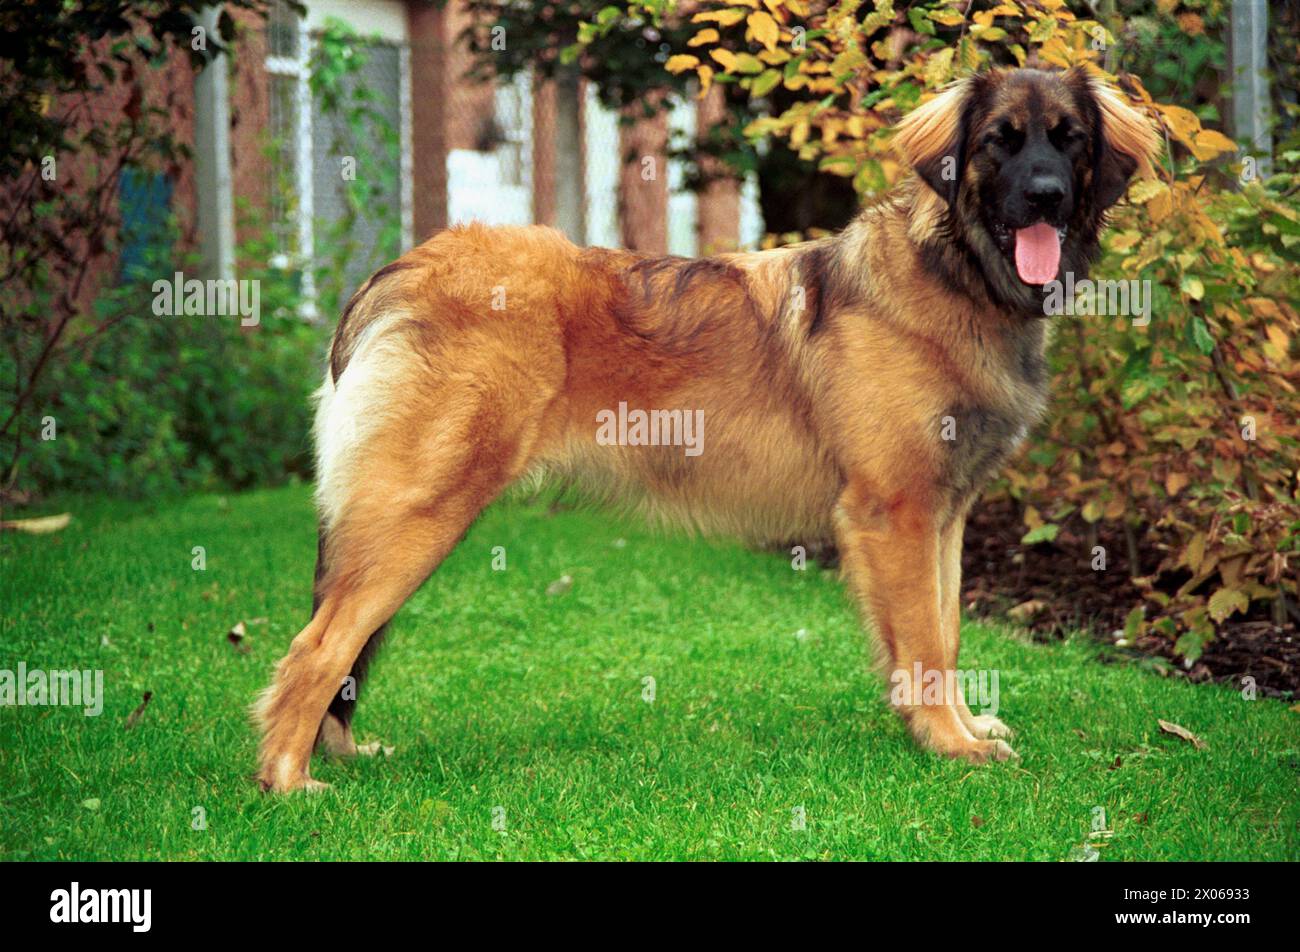 Sandy Leonberger Puppy Dog Stood Sideways in Garden Stock Photo